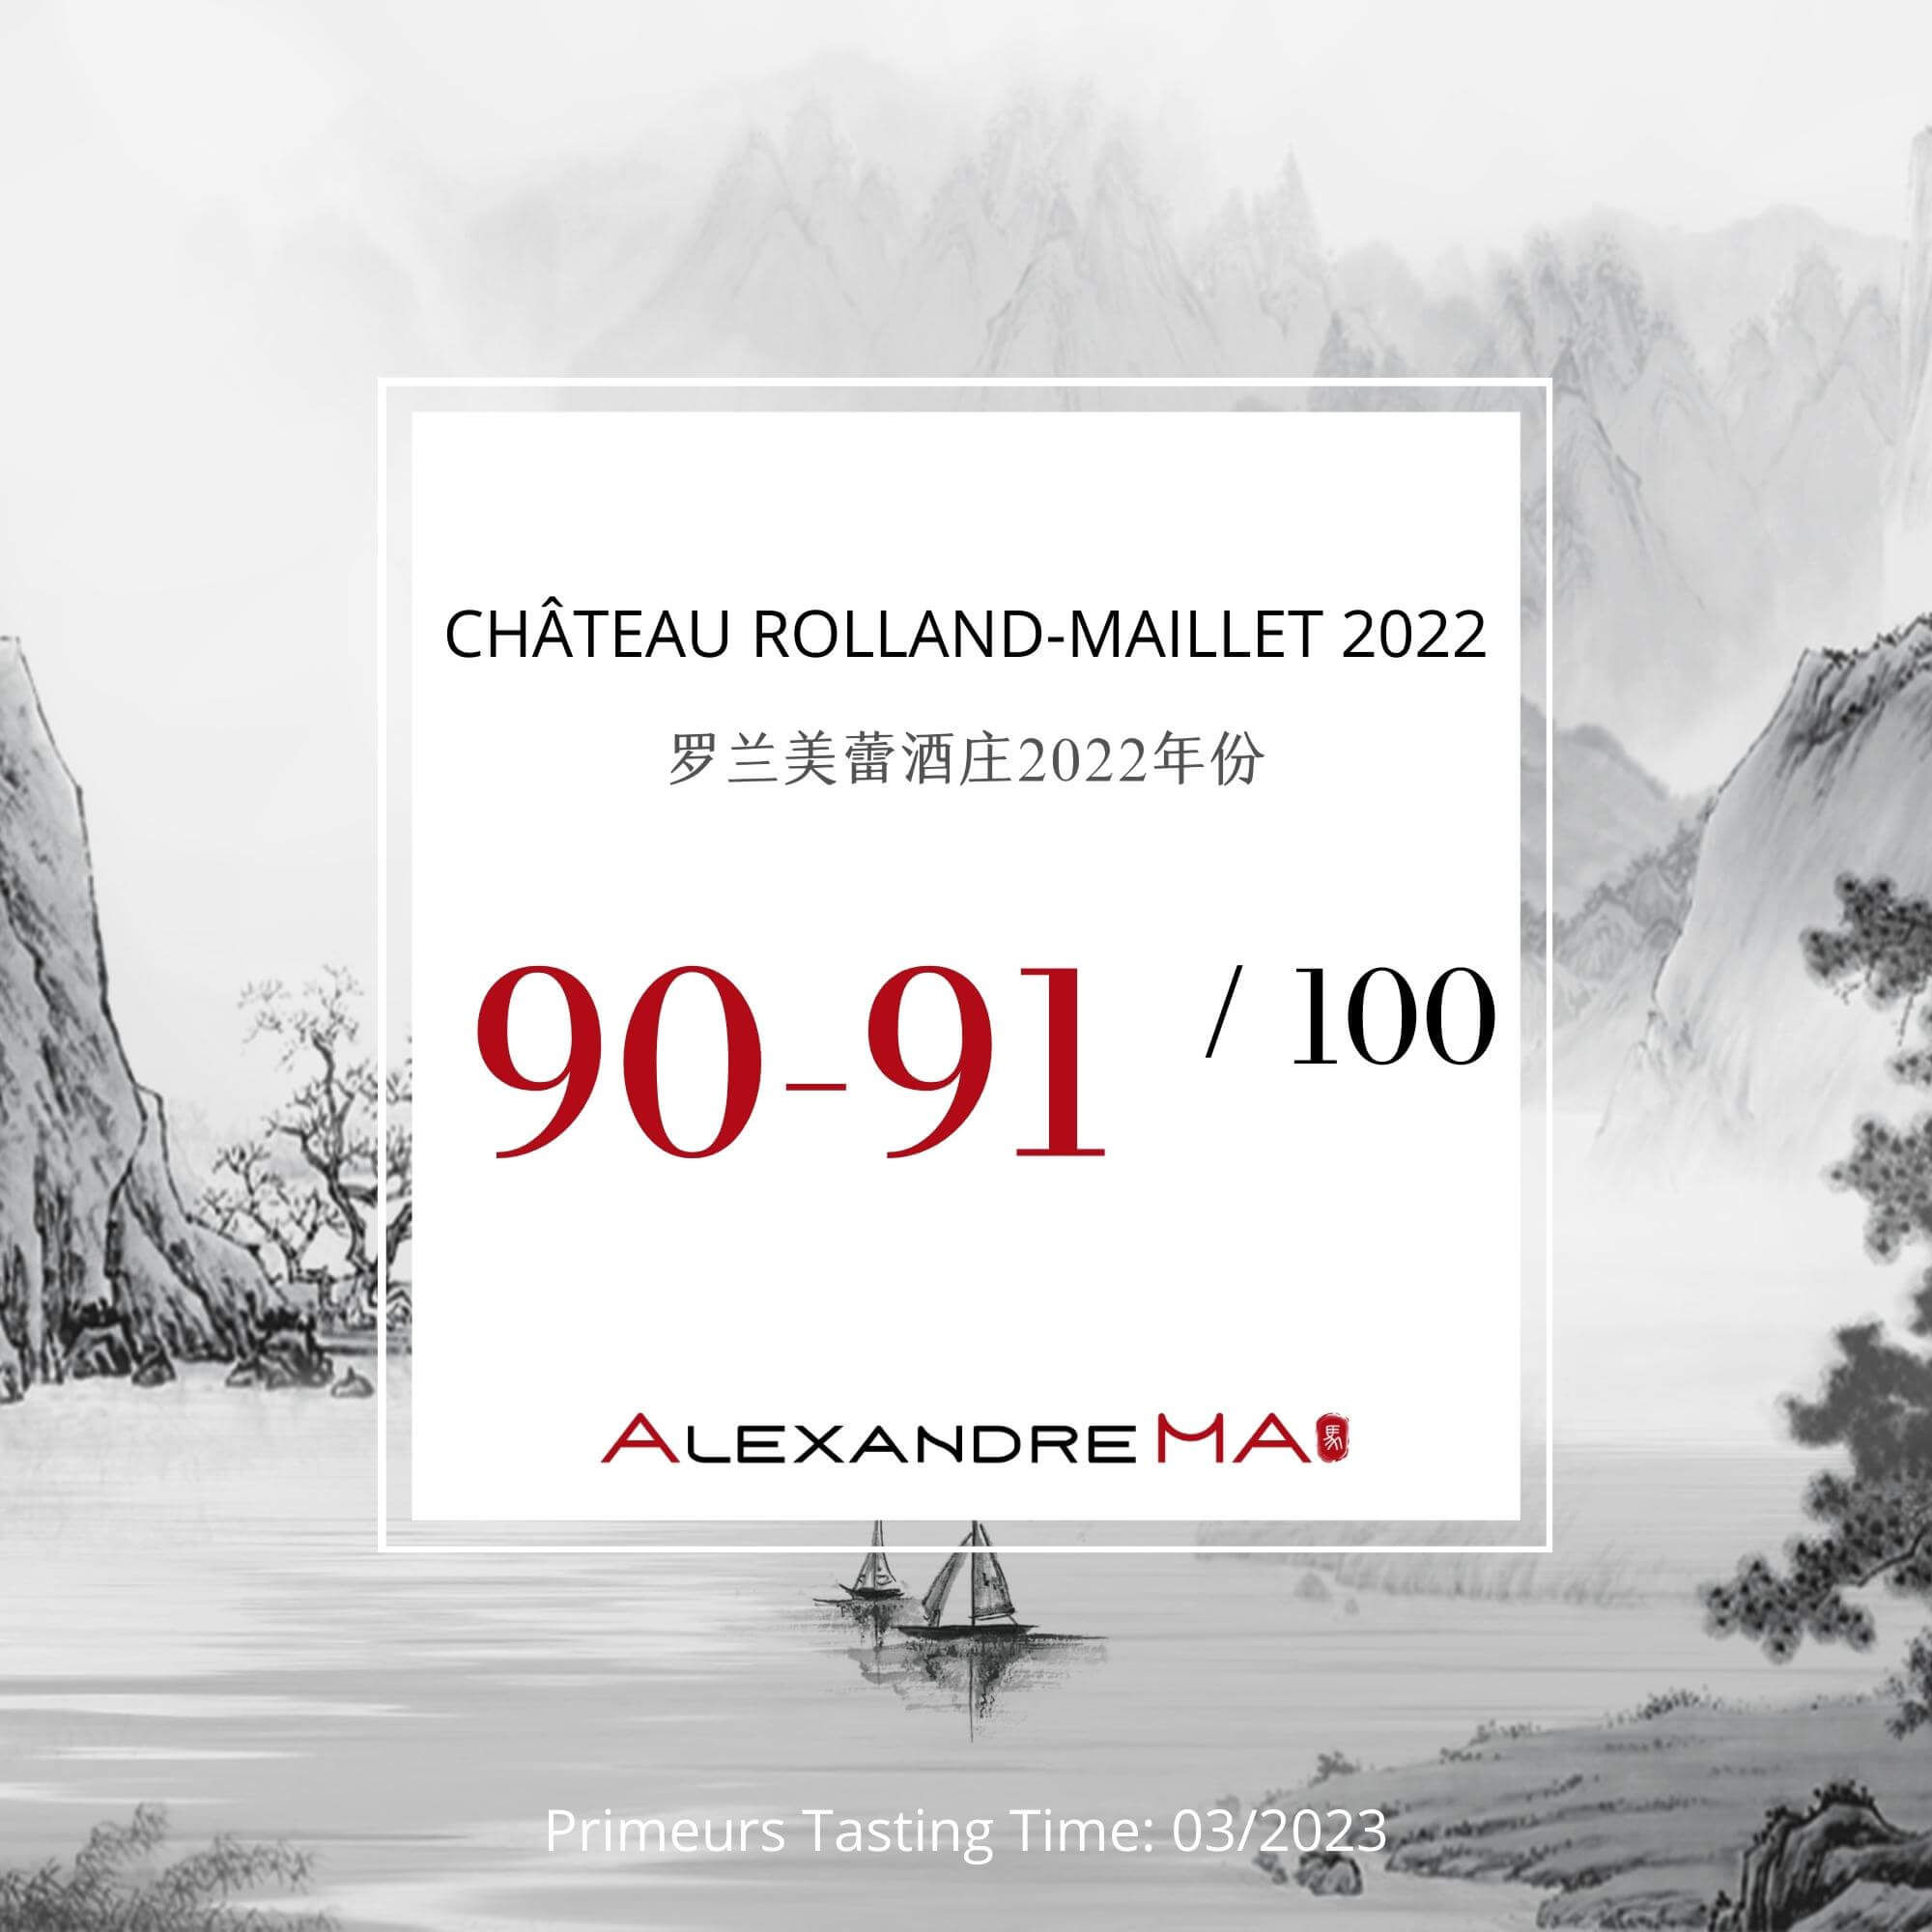 Château Rolland-Maillet 2022 Primeurs - Alexandre MA